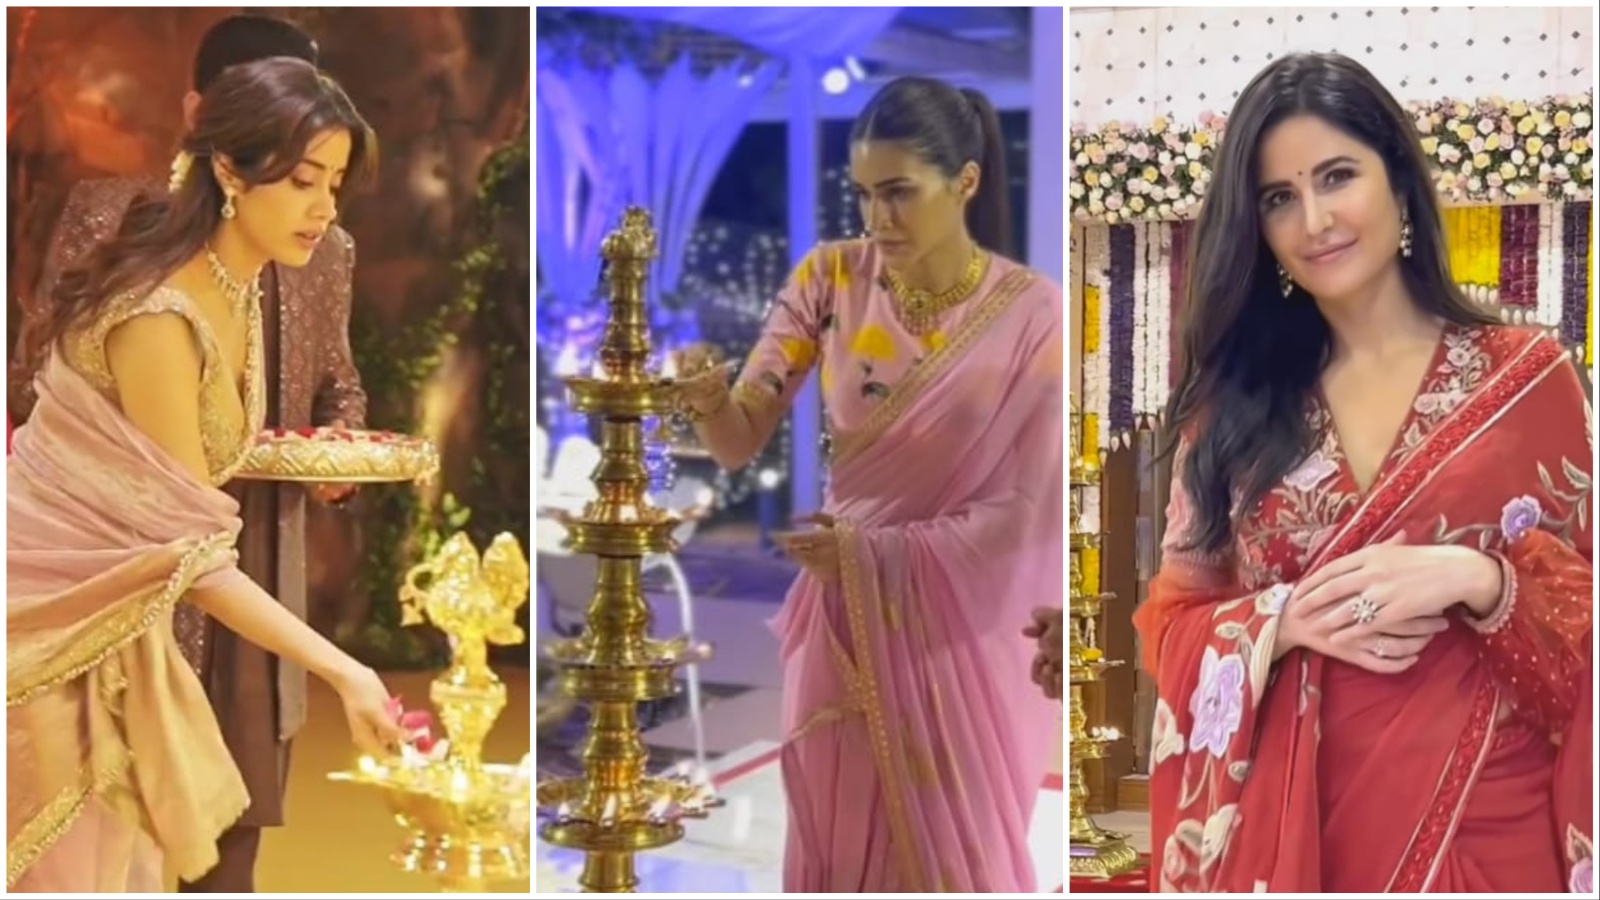 Katrina Kapoor Ka Bf Full Hd Video - Katrina Kaif, Rashmika Mandanna, Naga Chaitanya attend Navratri  celebrations in Thrissur. See photos and videos | Bollywood News - The  Indian Express